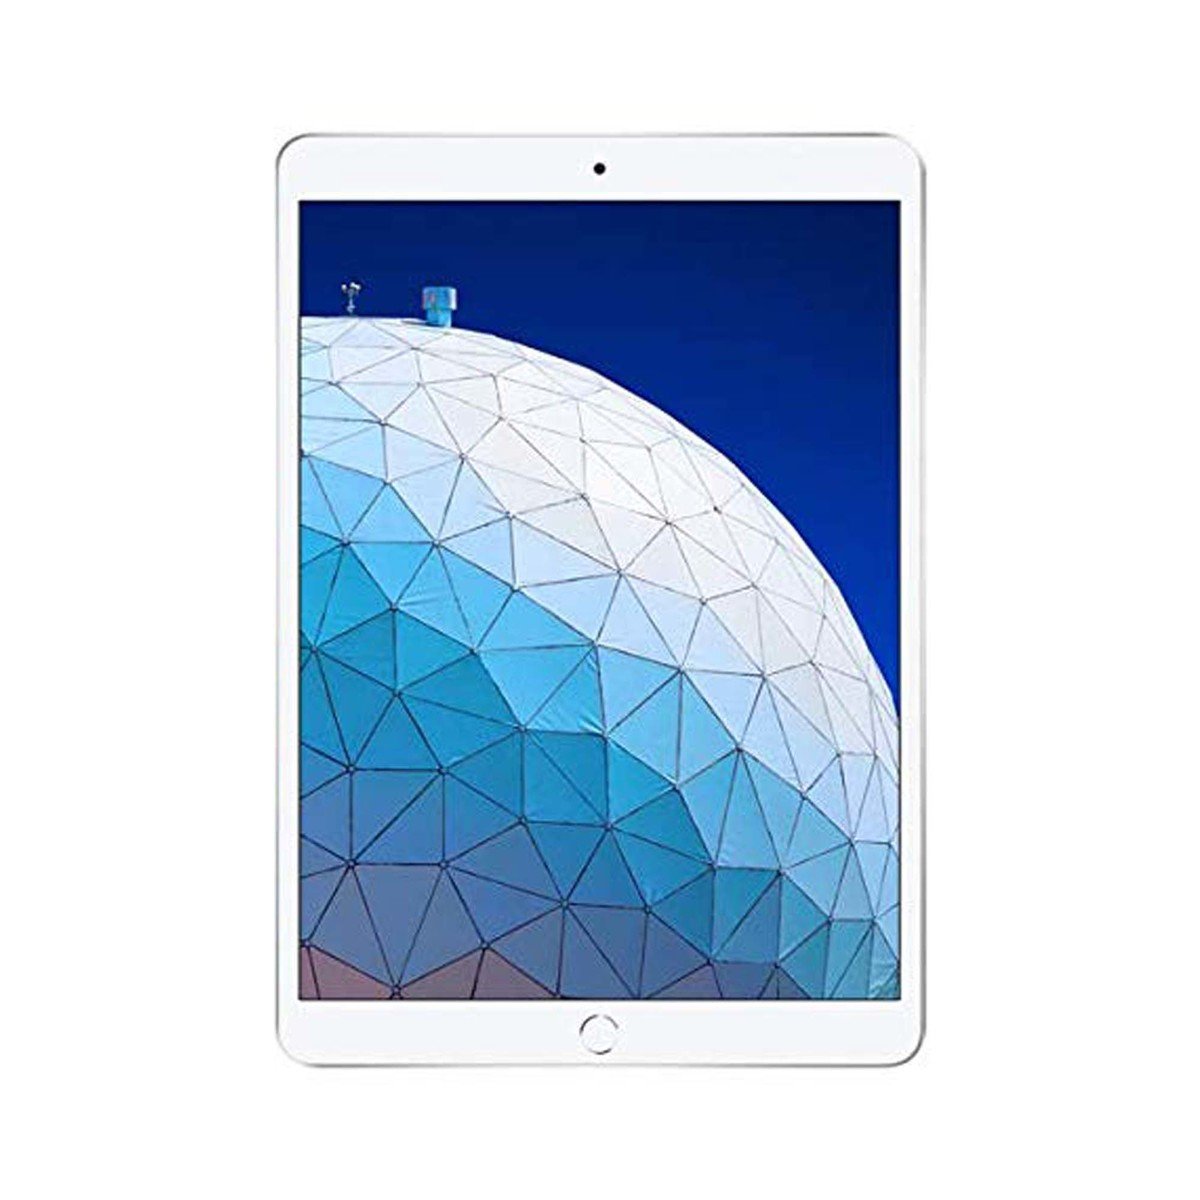 Apple iPad Air (2019) - iOS (Wi-Fi, 256GB)GB 10.5inch Silver